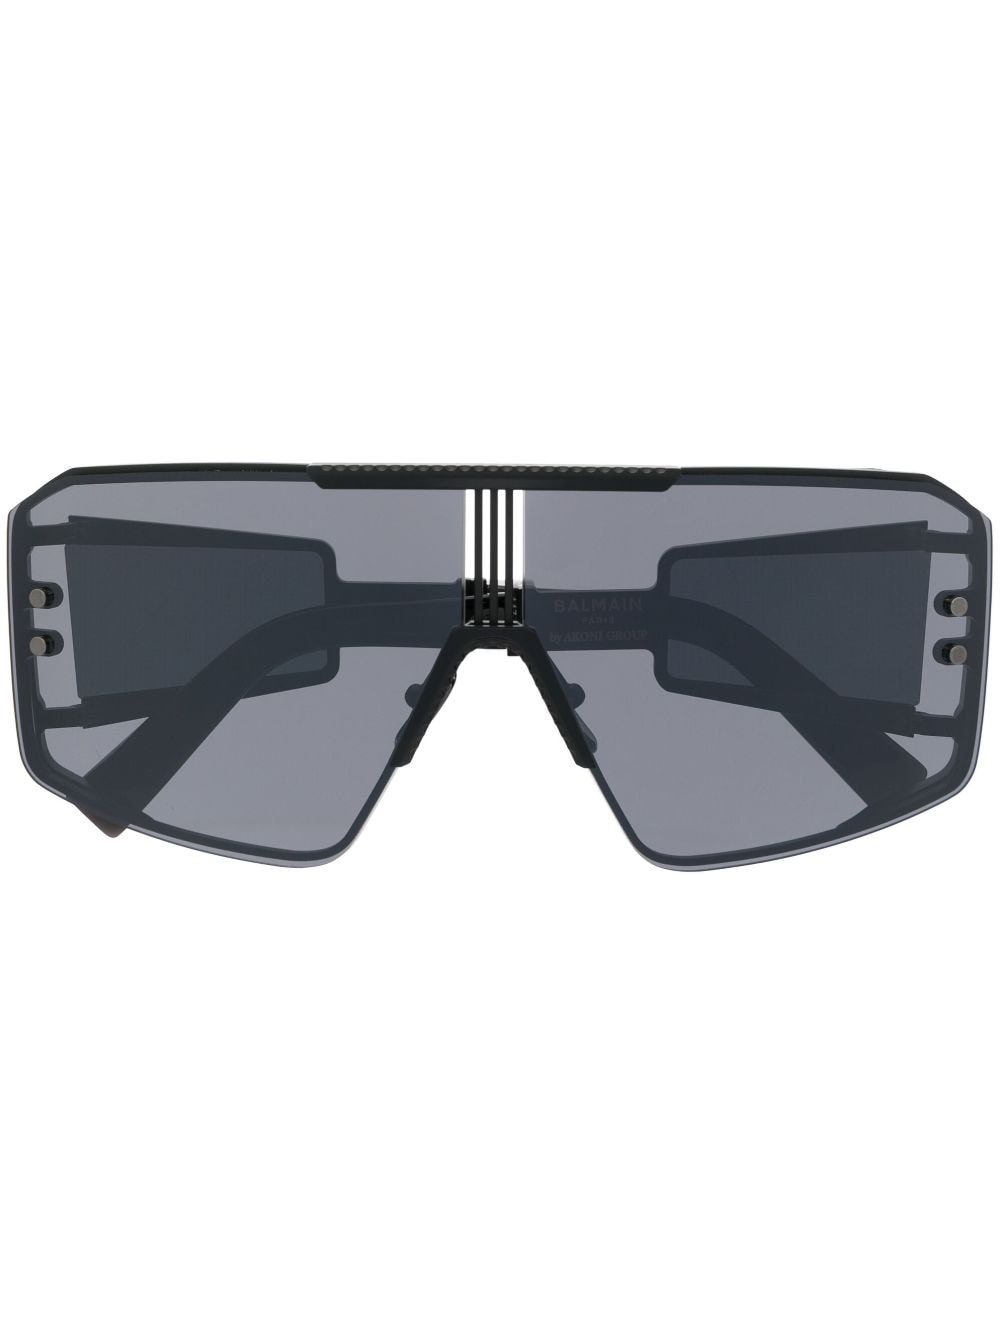 Balmain Eyewear Le Masque tinted round-frame sunglasses - Black von Balmain Eyewear